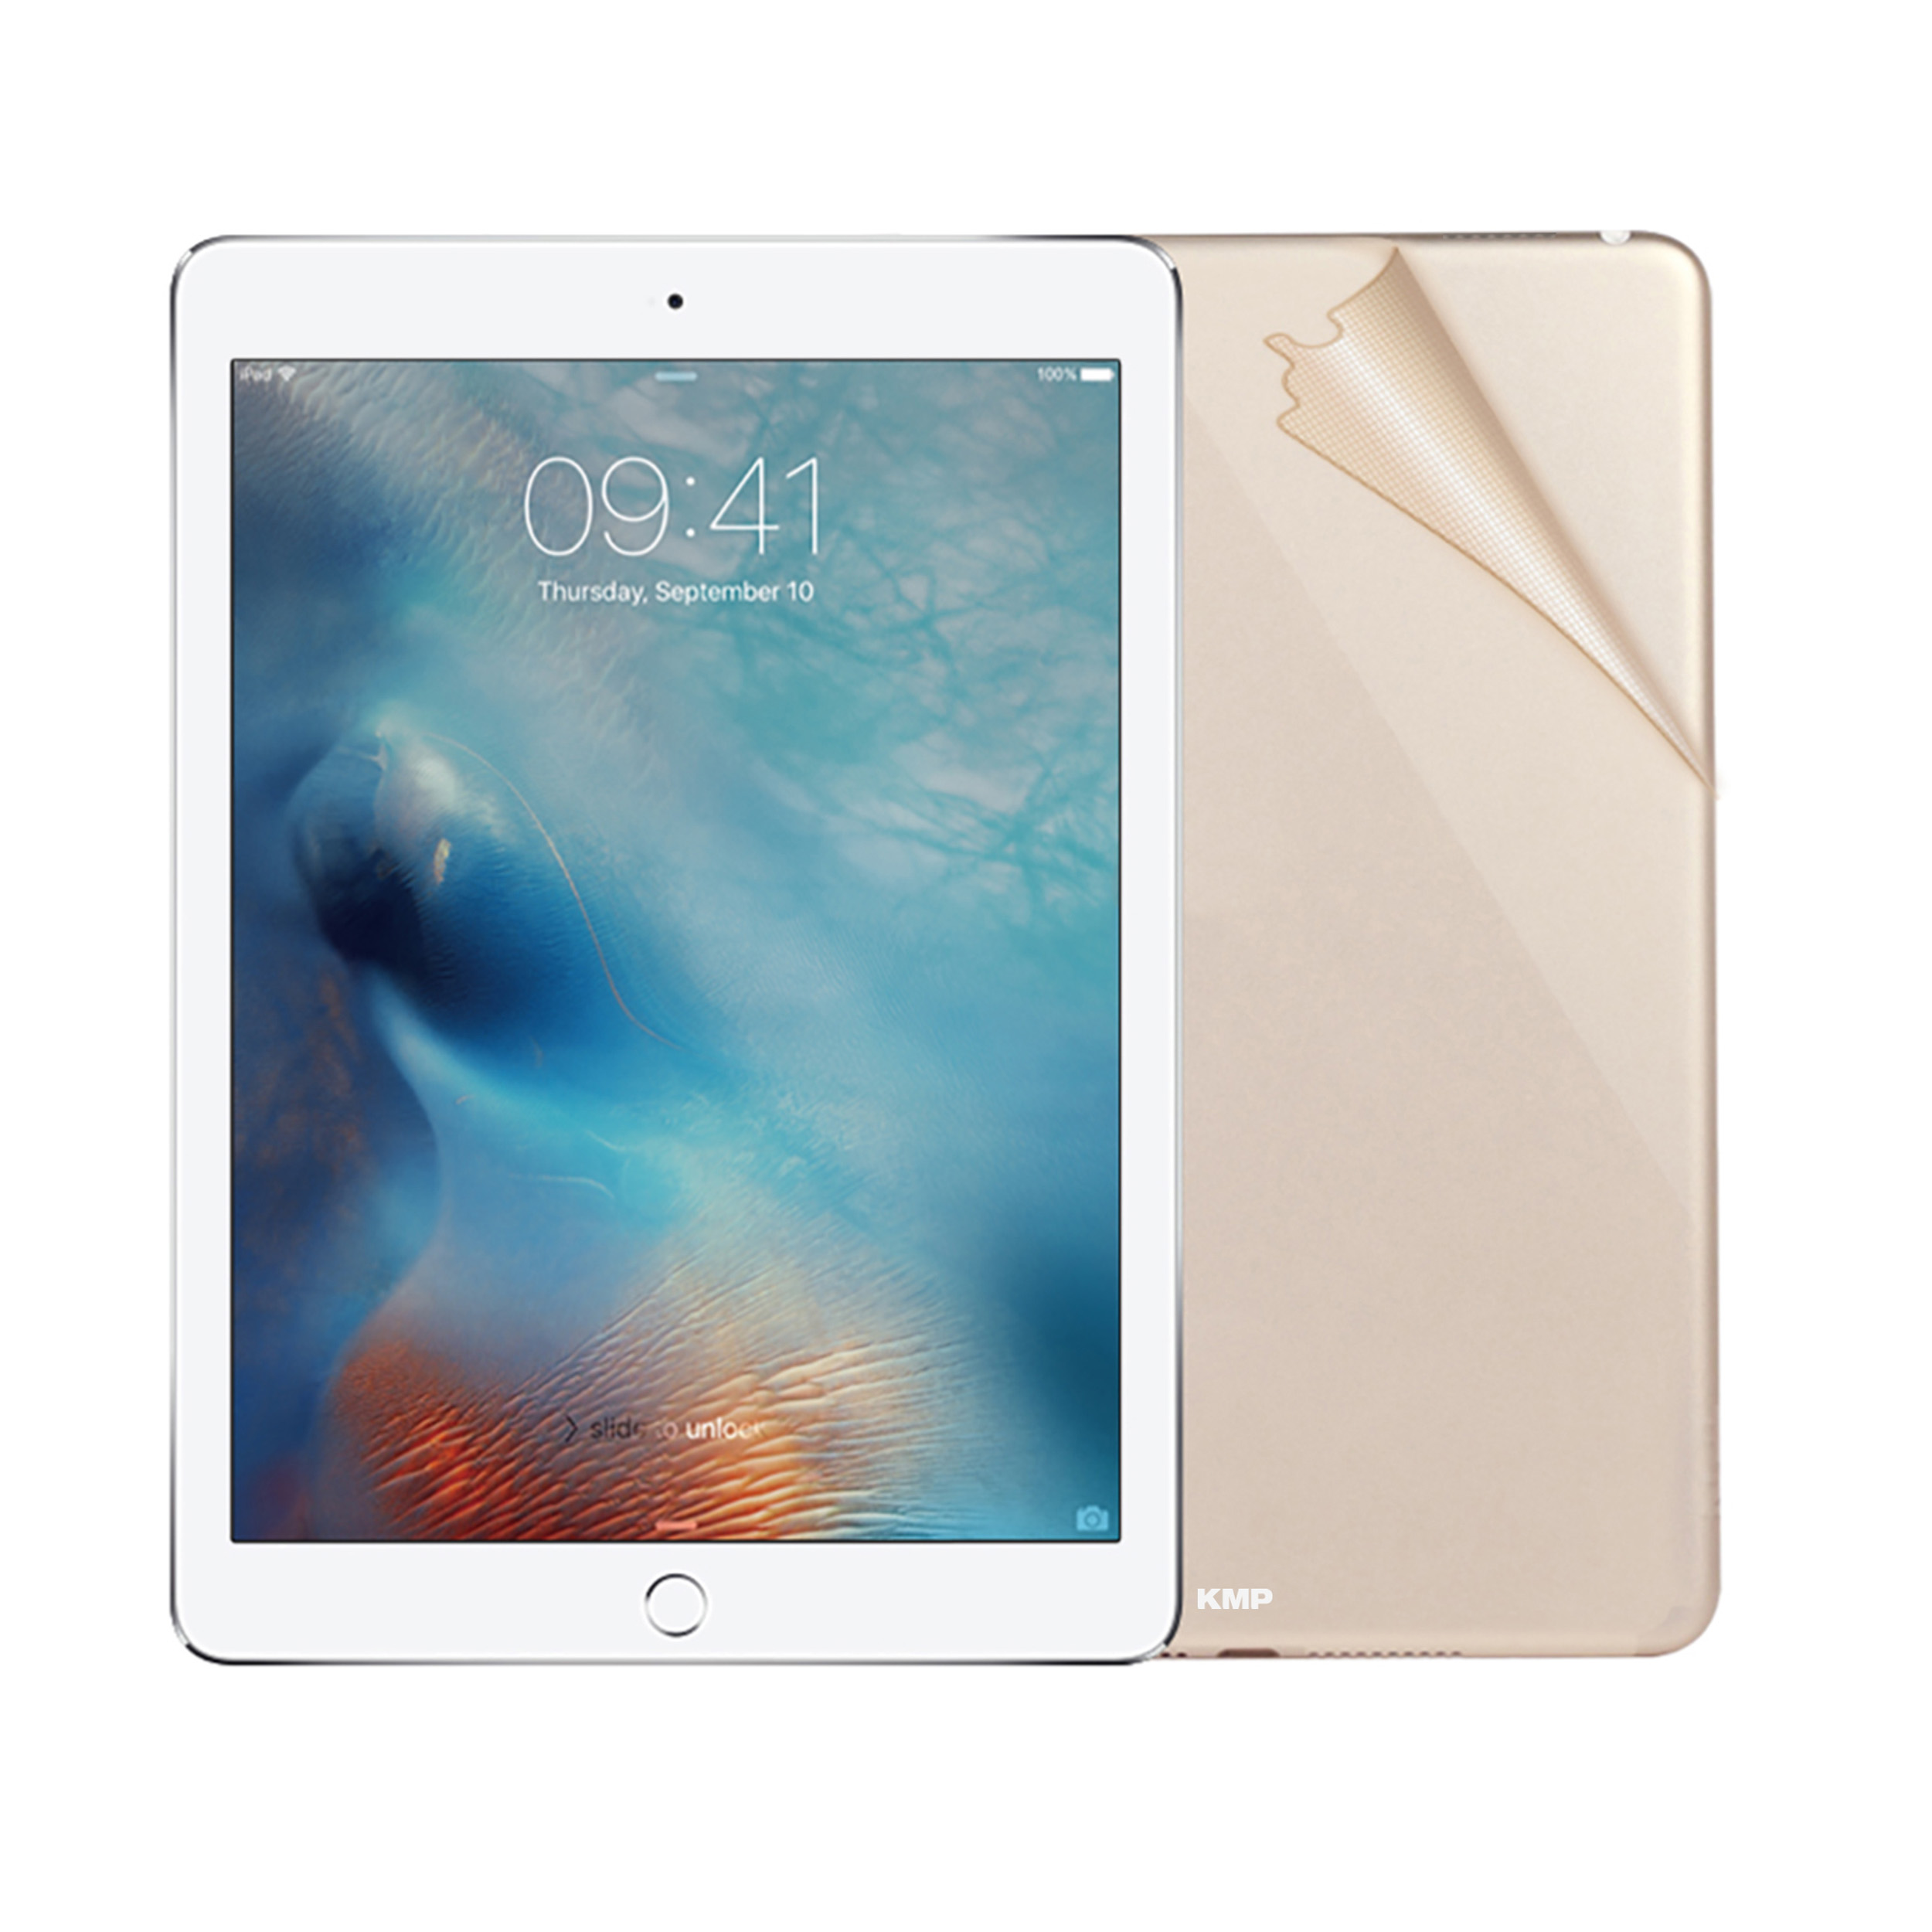 Apple 3M-Material, Schutzfolie Flip iPad Rückseite 6H KMP Protective skin Gold Mini für AntiScratchLevel, Vinylfilm, gold 4 für Cover